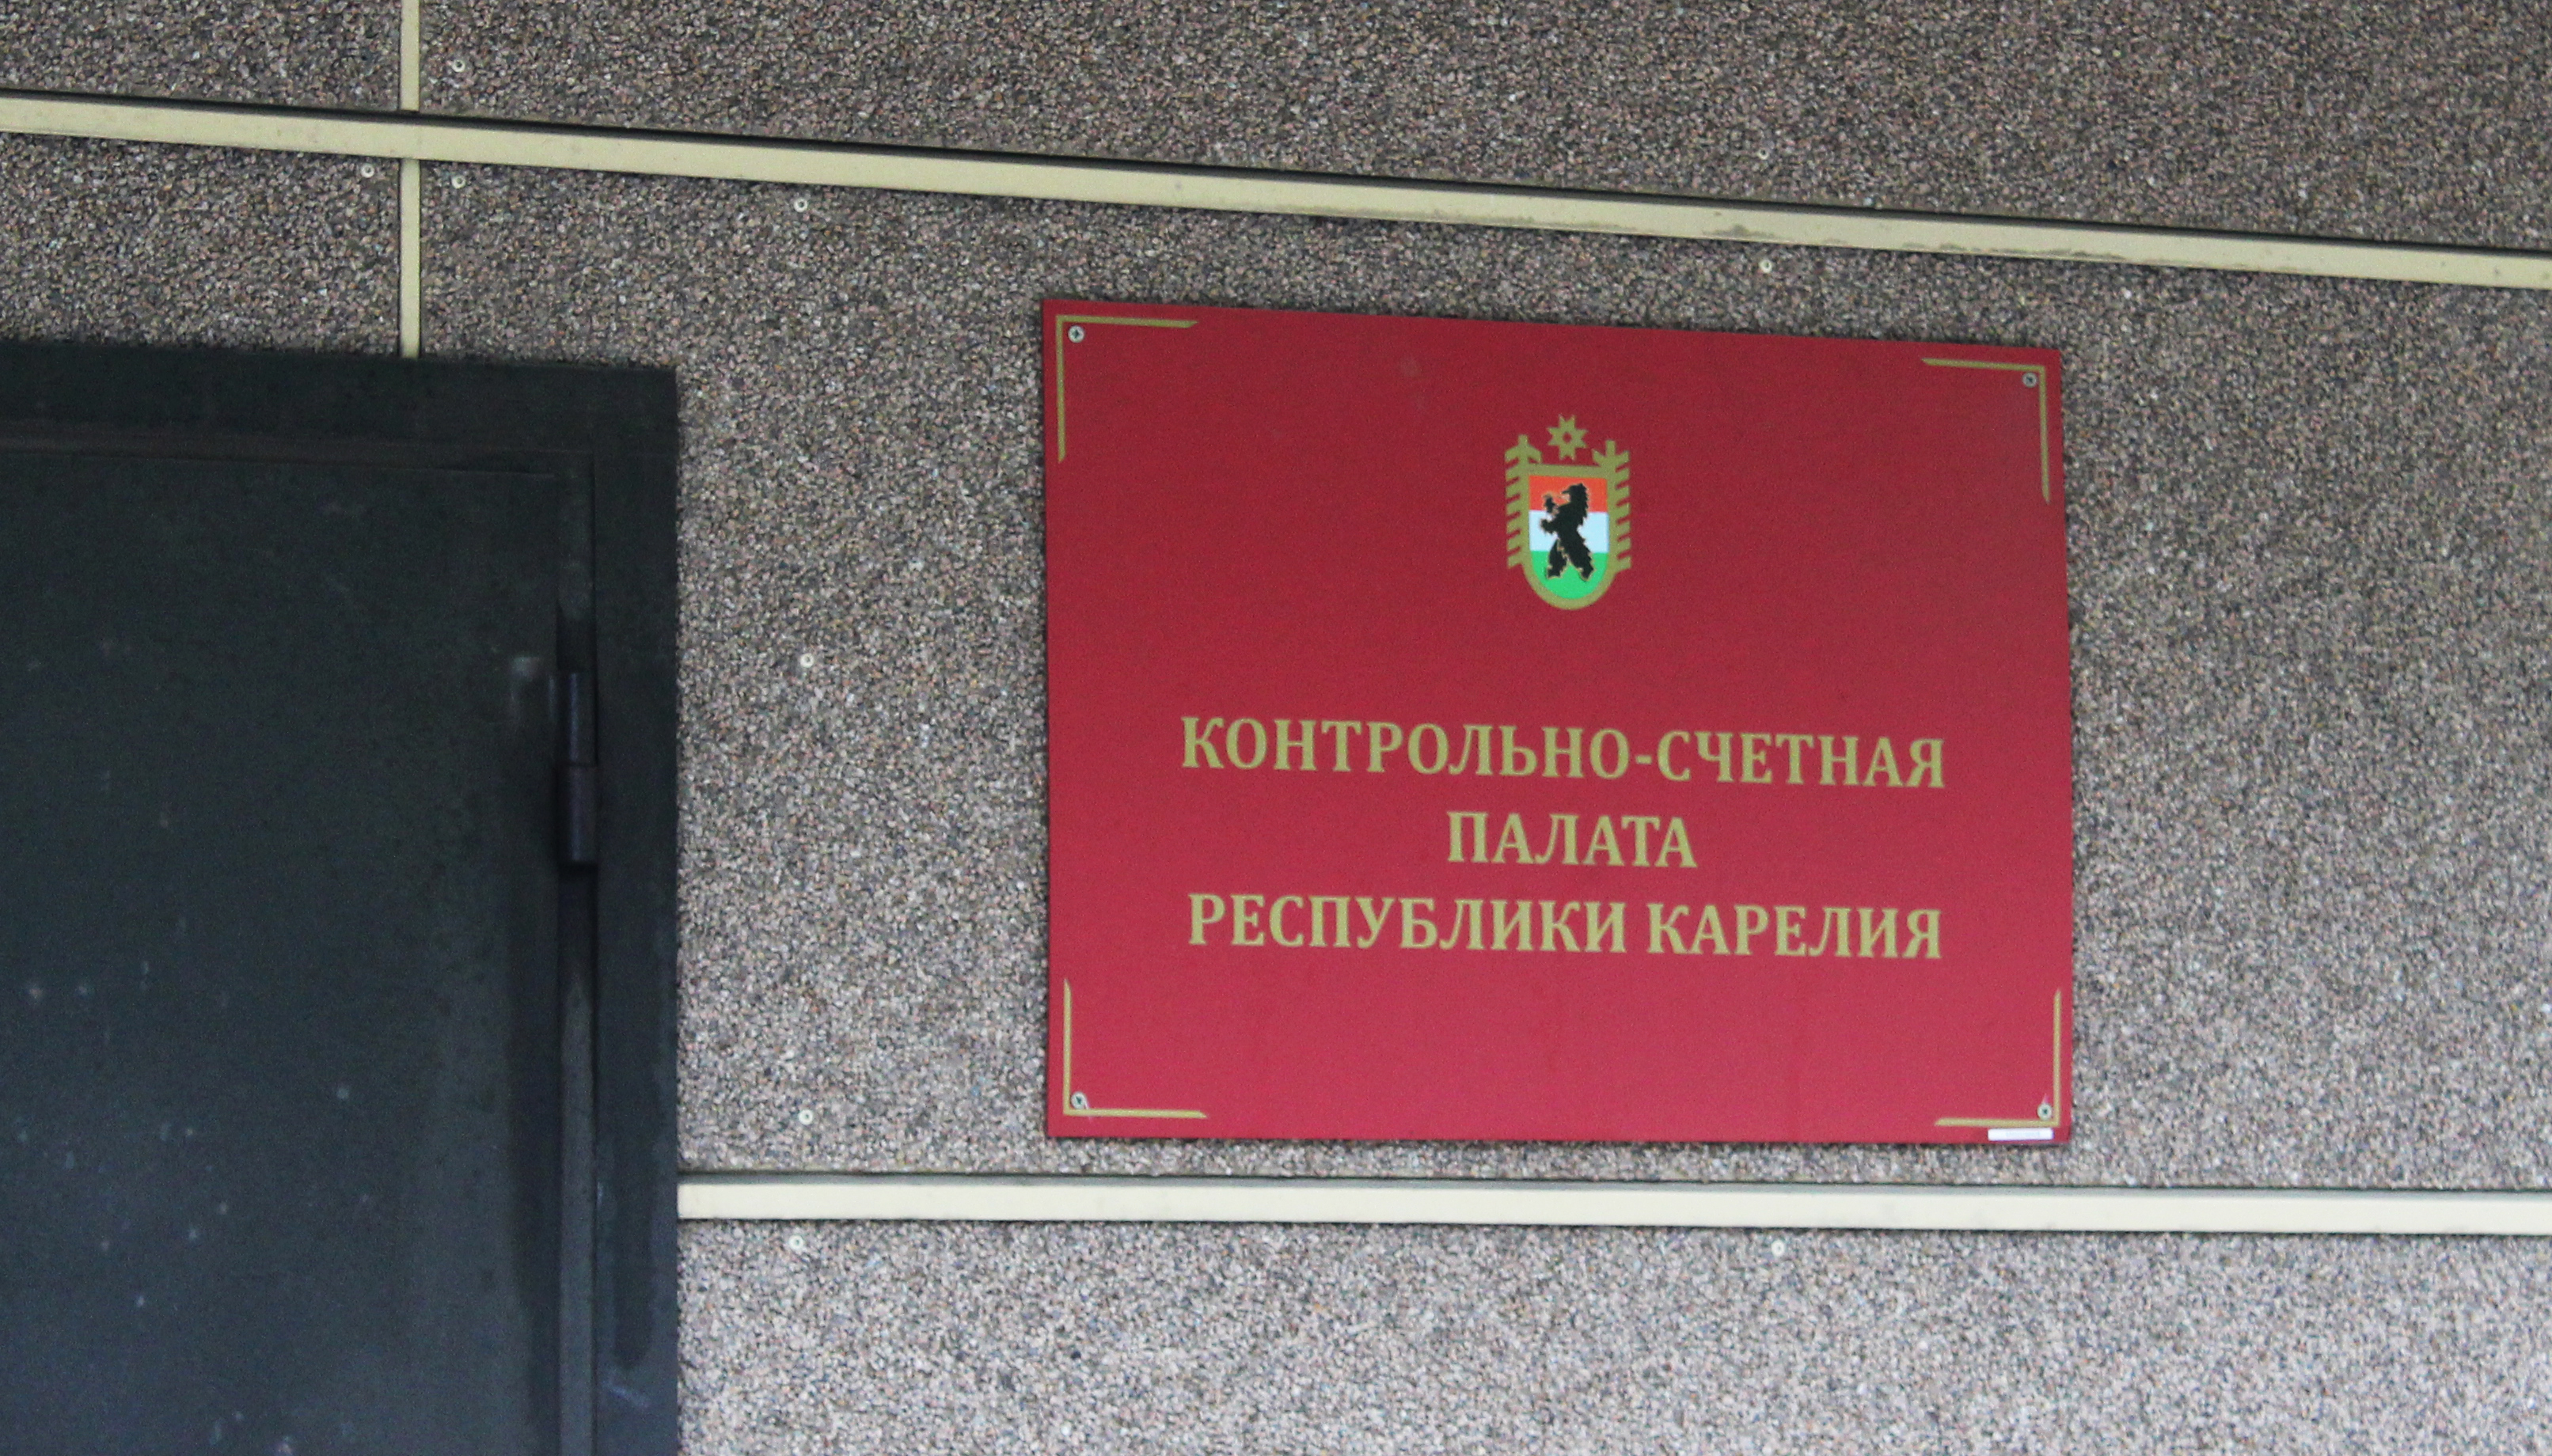 Контрольно-счетная палата Карелии обнародовала результаты проверки ГУП "КарелКоммунЭнерго"